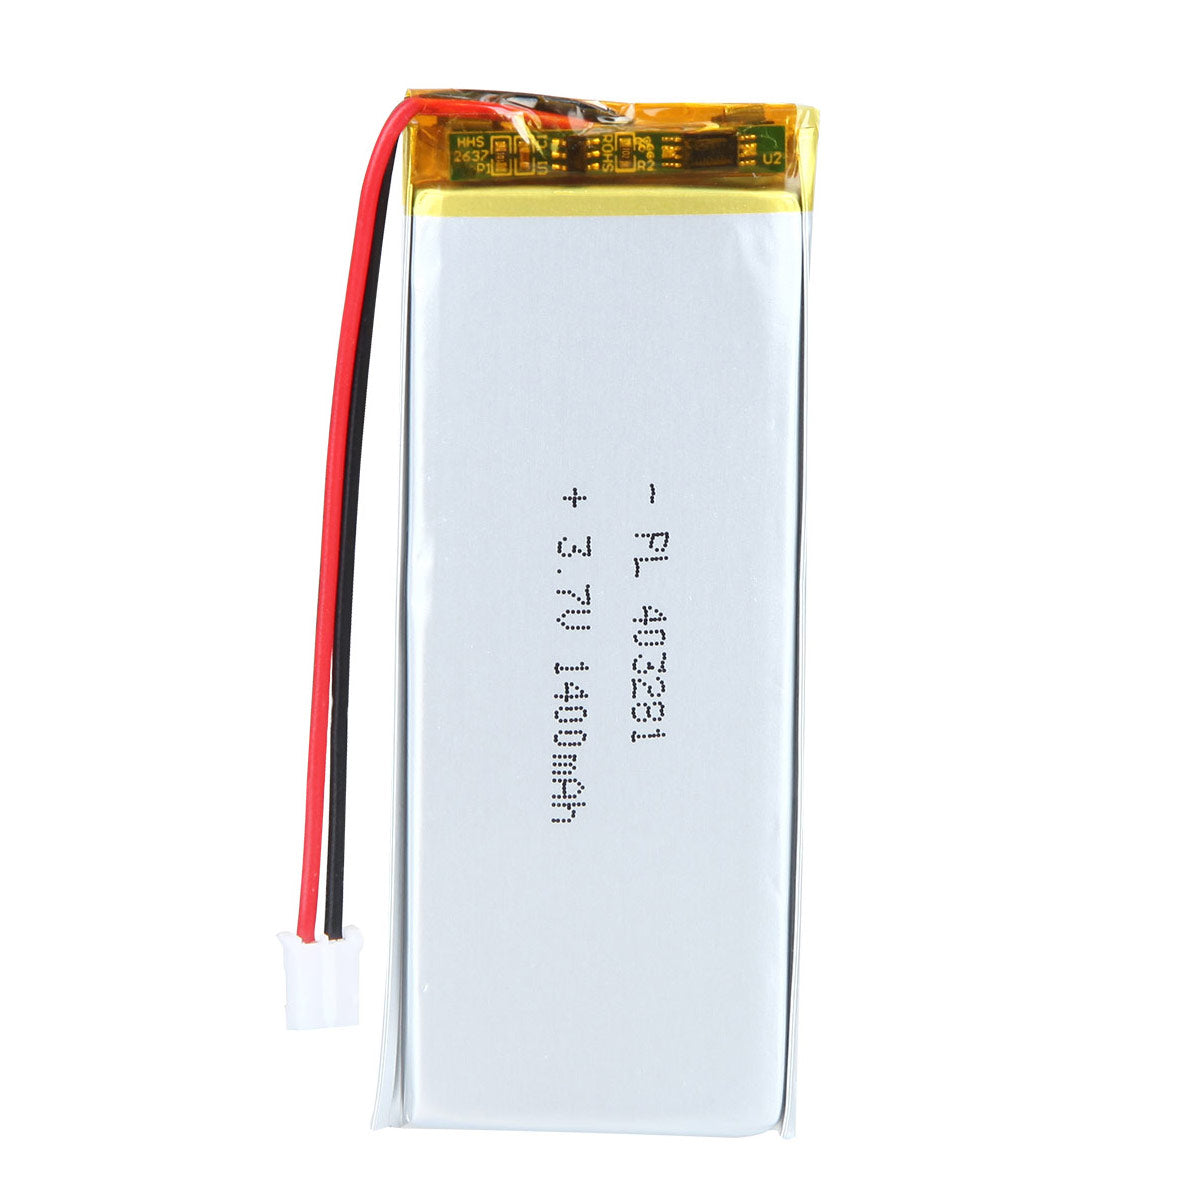 3.7V 403281 1400mAh Batterie Lithium Polymère Rechargeable Longueur 83mm